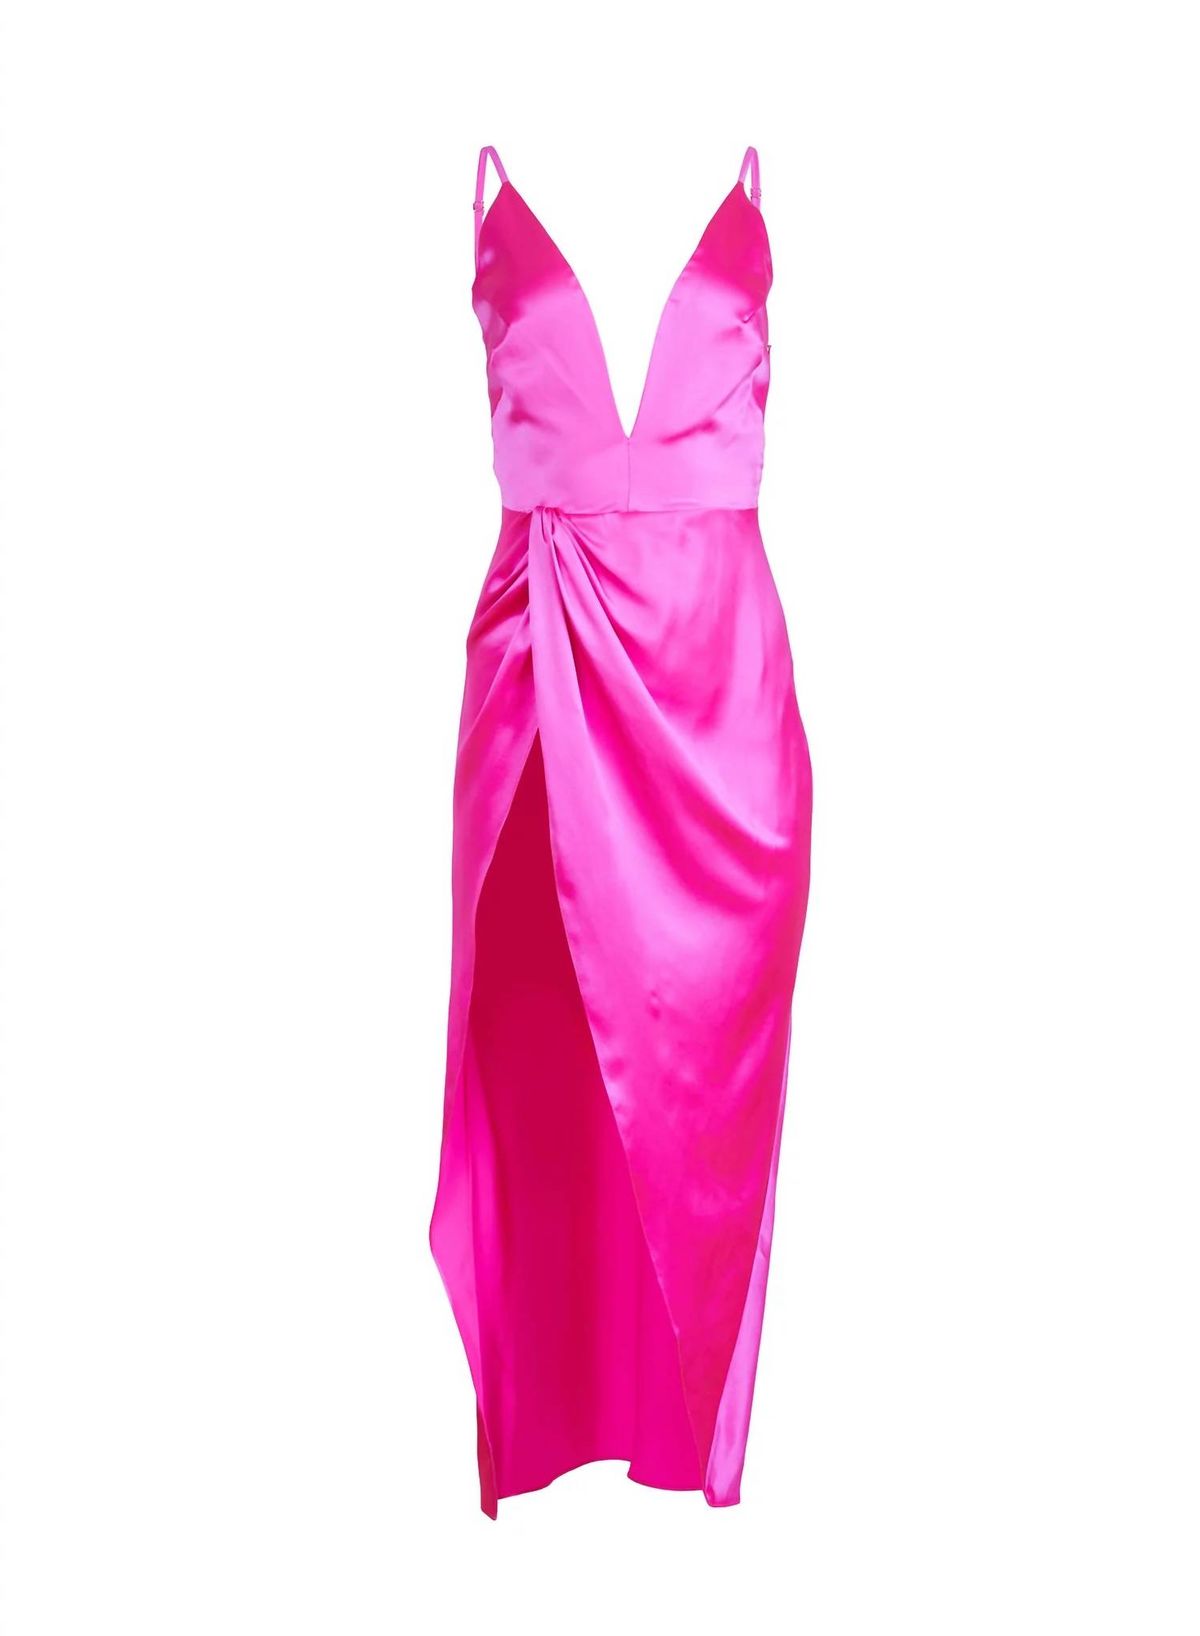 Style 1-3393943617-649 Fleur Du Mal Size 2 Plunge Satin Pink Side Slit Dress on Queenly